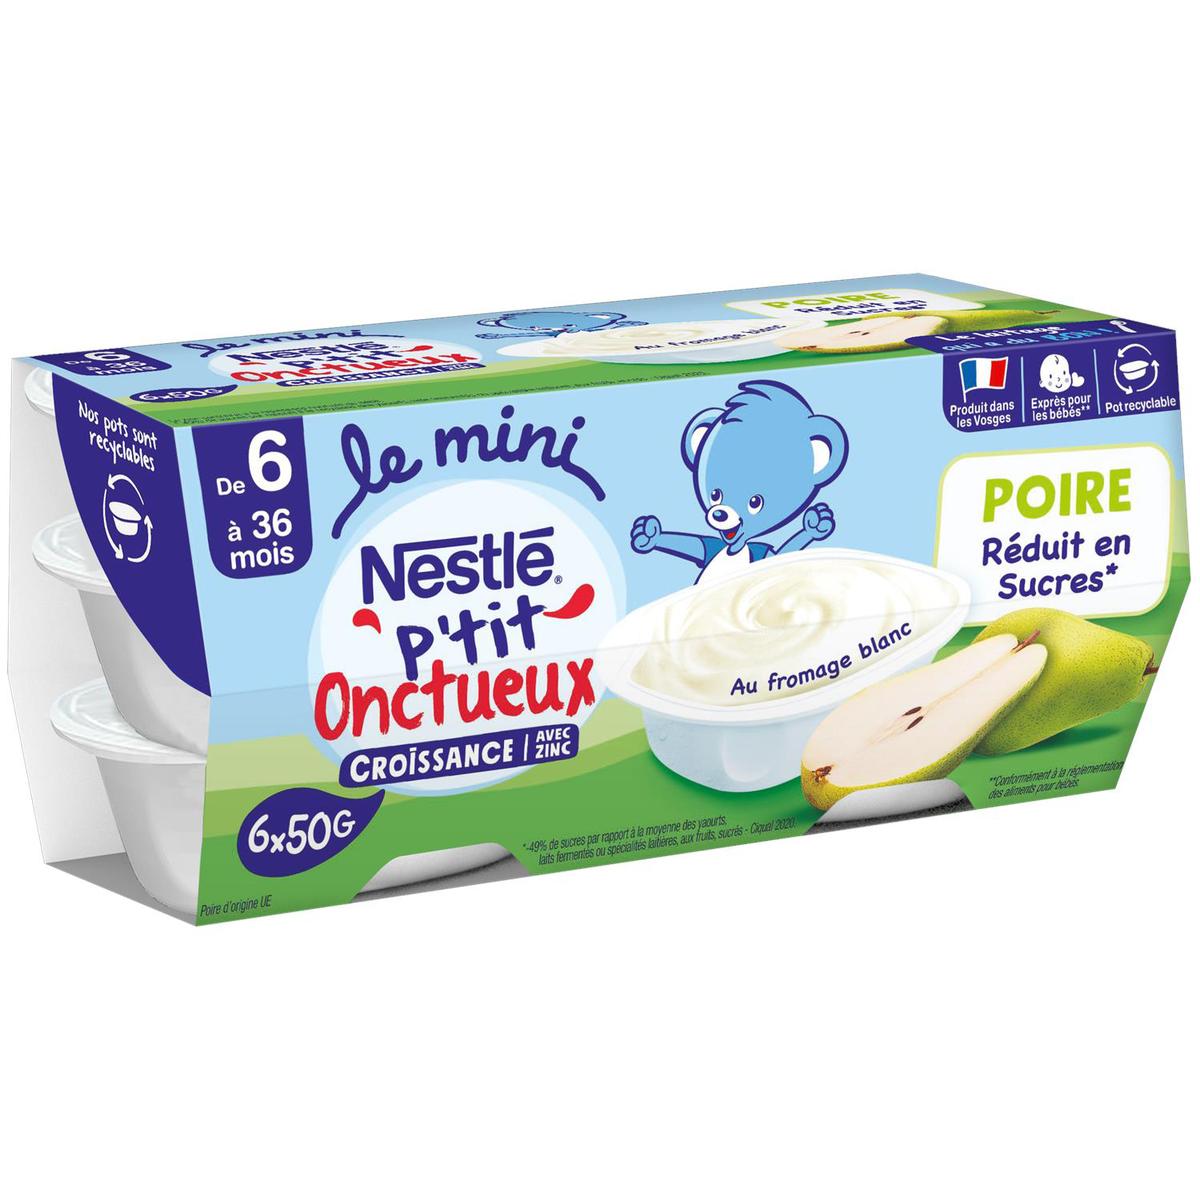 Une substance cancérogène trouvée dans des biscuits pour bébés Nestlé - Le  Parisien